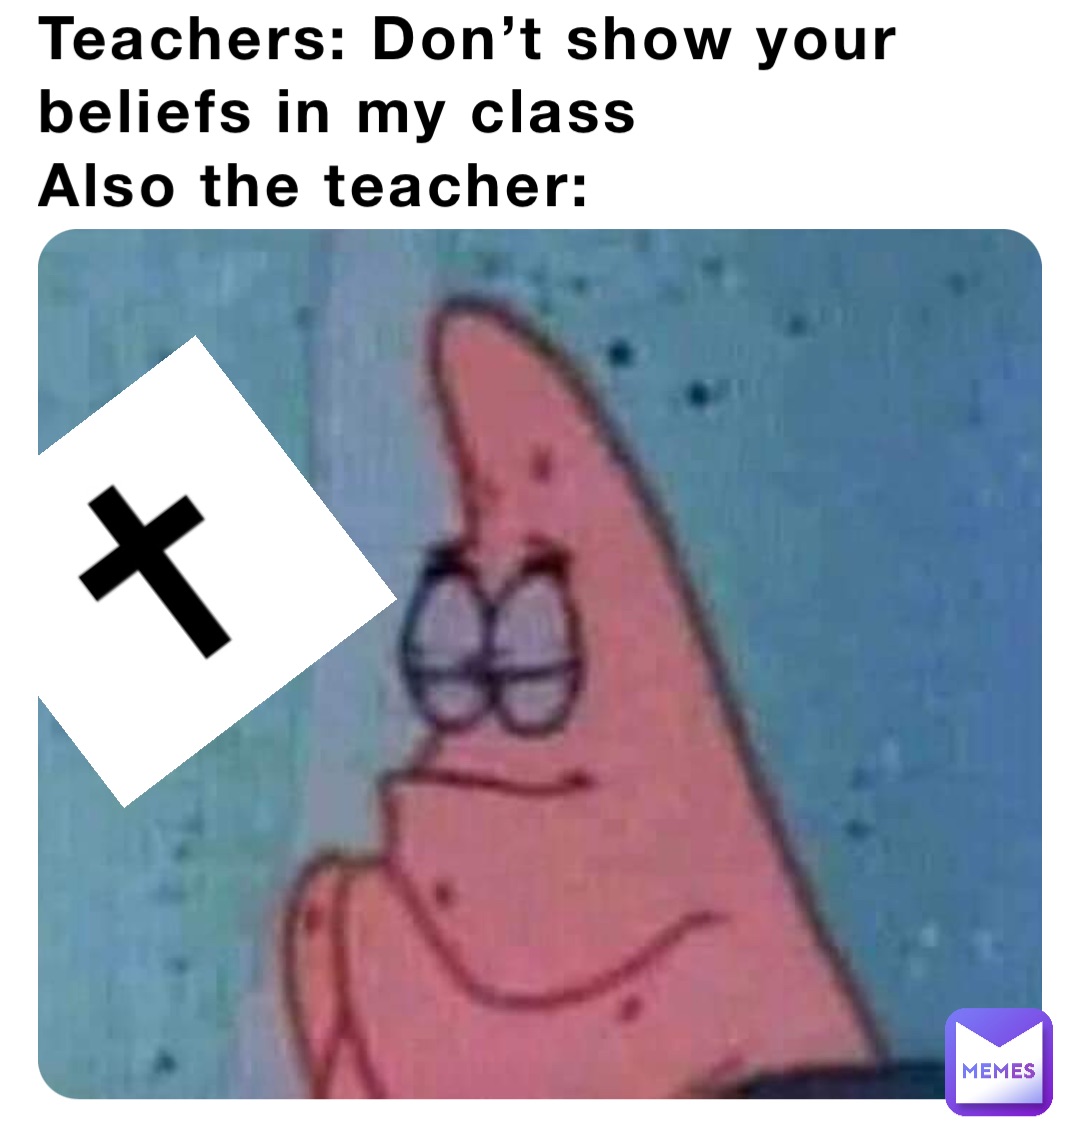 Teachers: Don’t show your beliefs in my class
Also the teacher: